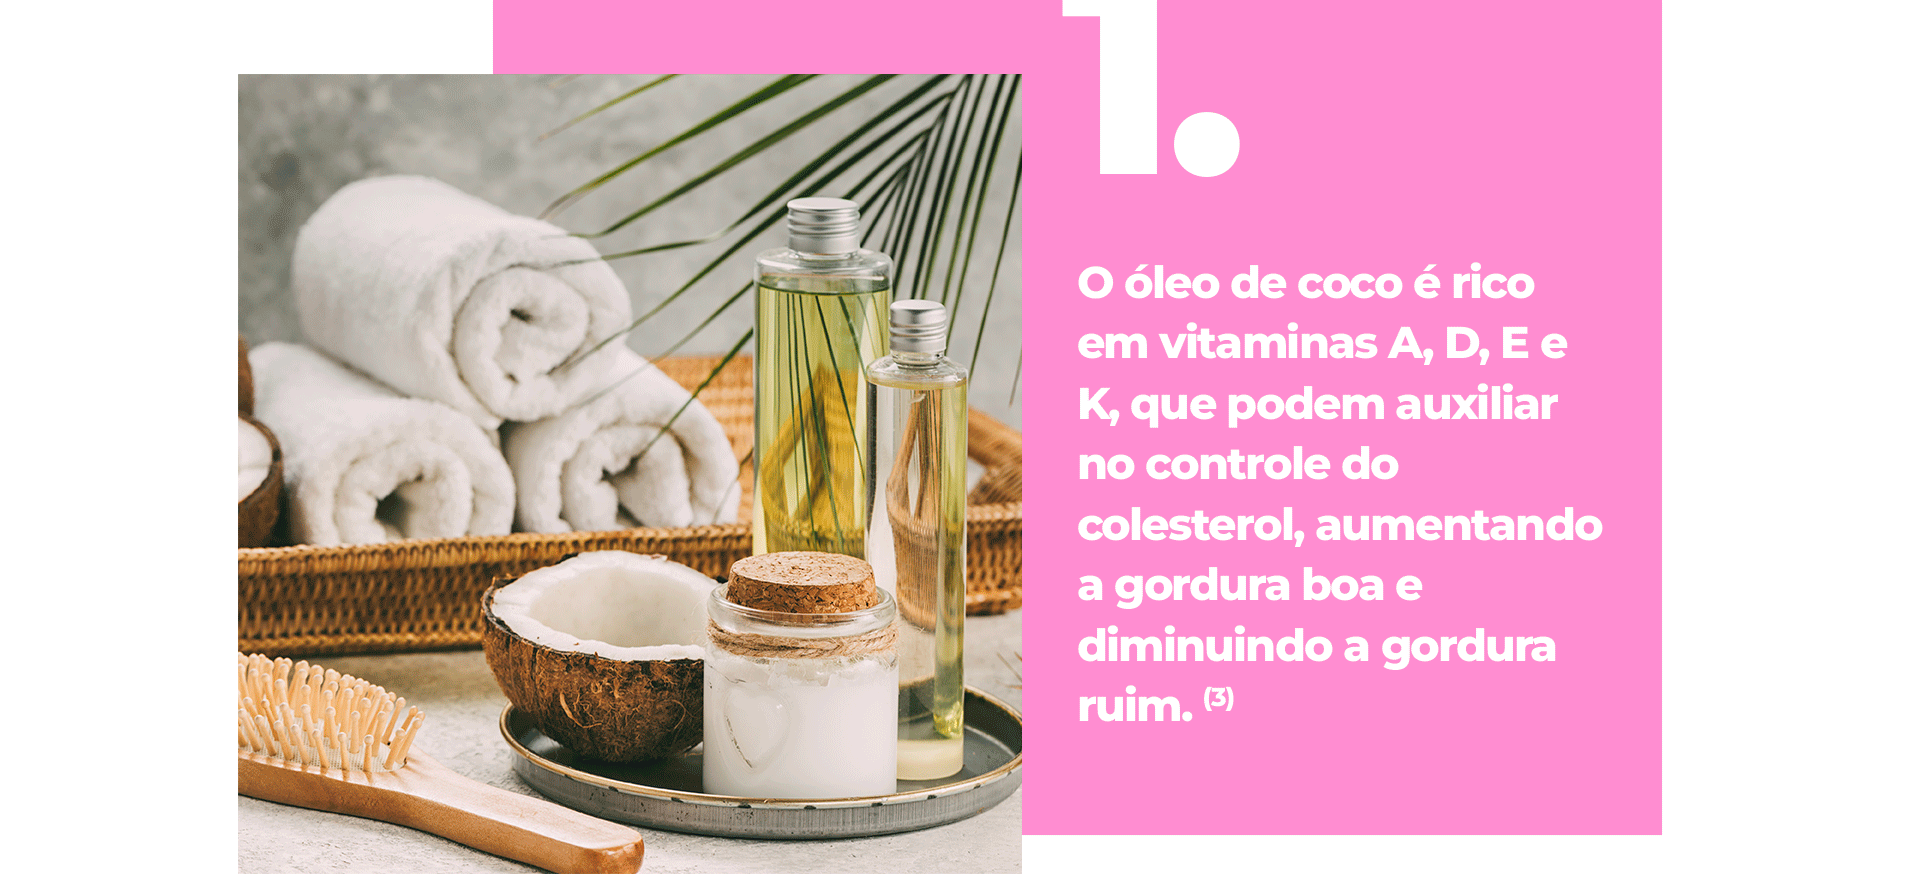 O óleo de coco é rico em vitaminas A, D, E e K, que podem auxiliar no controle do colesterol, aumentando a gordura boa e diminuindo a gordura ruim